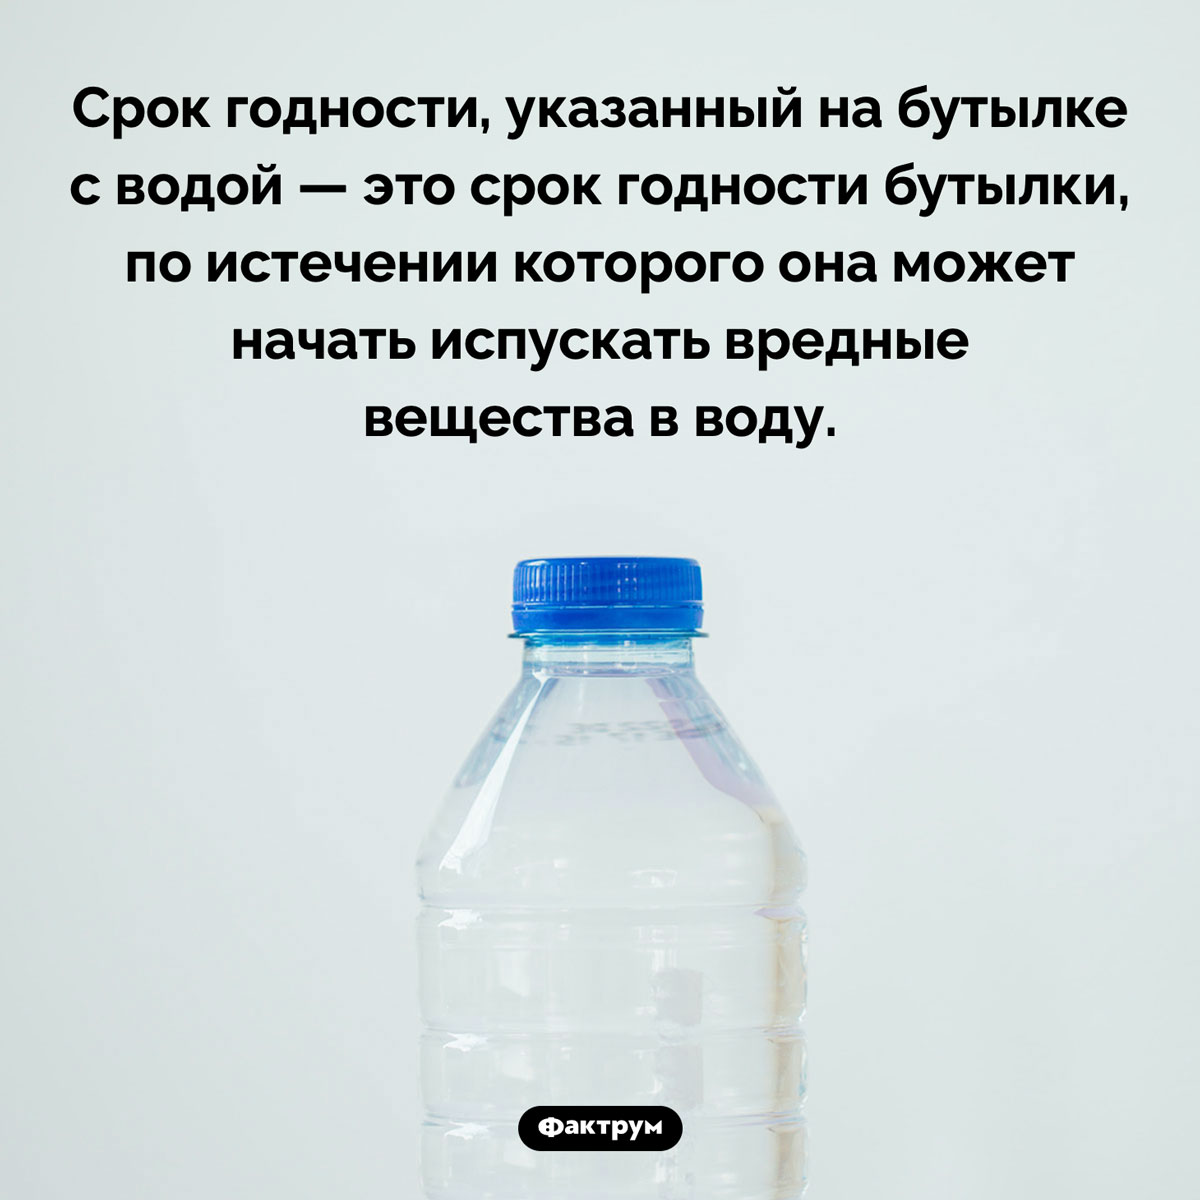 Срок годности на бутылке с водой. Срок годности, указанный на бутылке с водой — это срок годности бутылки, по истечении которого она может начать испускать вредные вещества в воду.